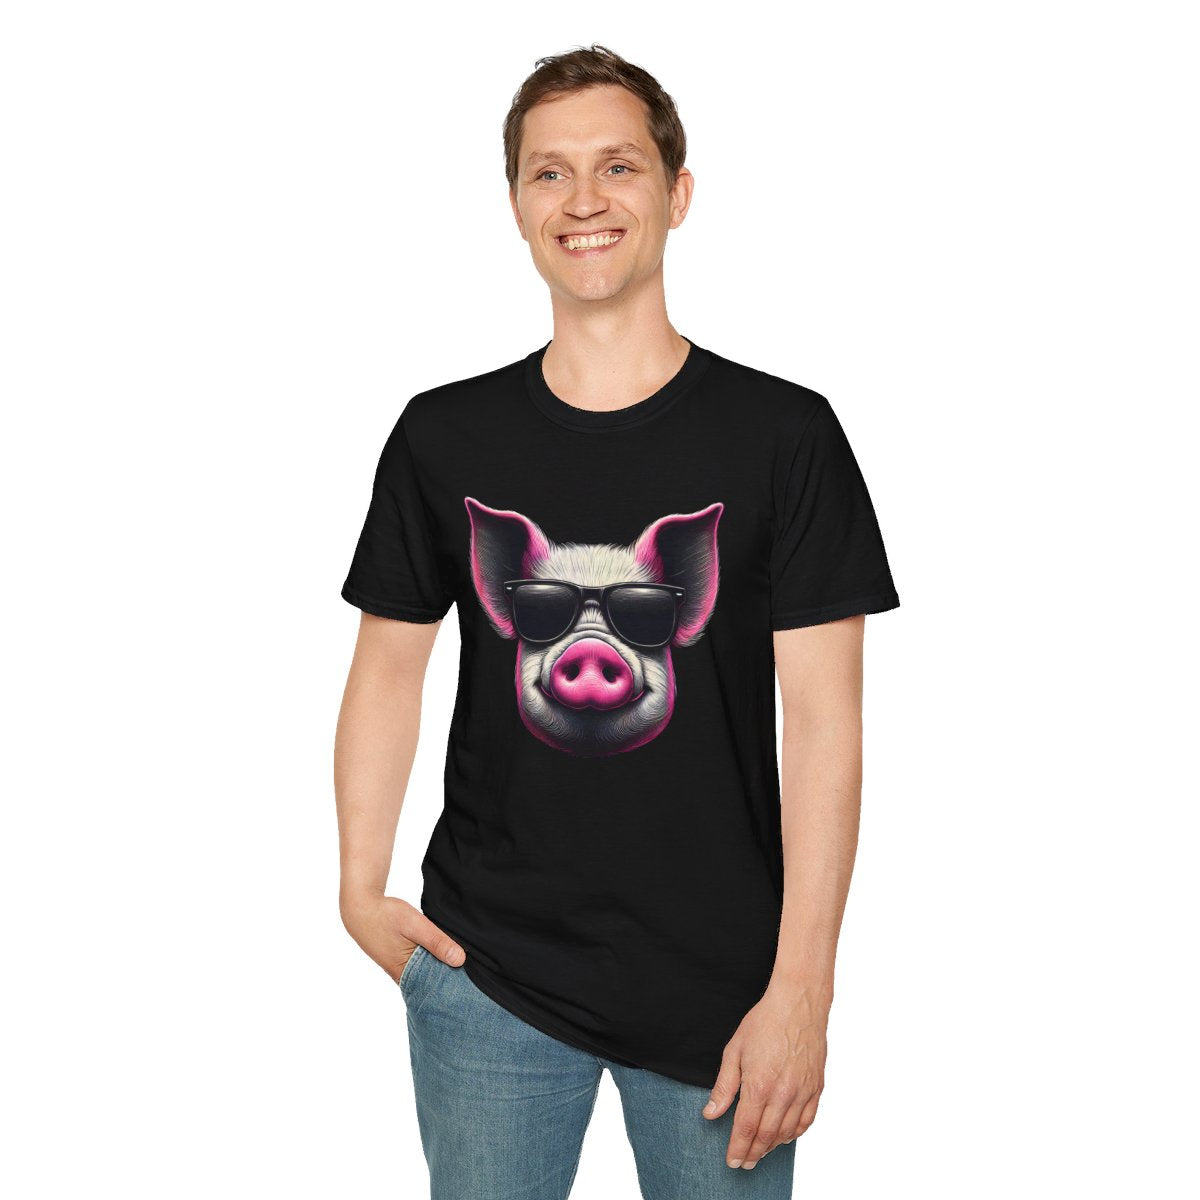 Graphic ArtPink Pig Face Unique T-Shirt  Image 4